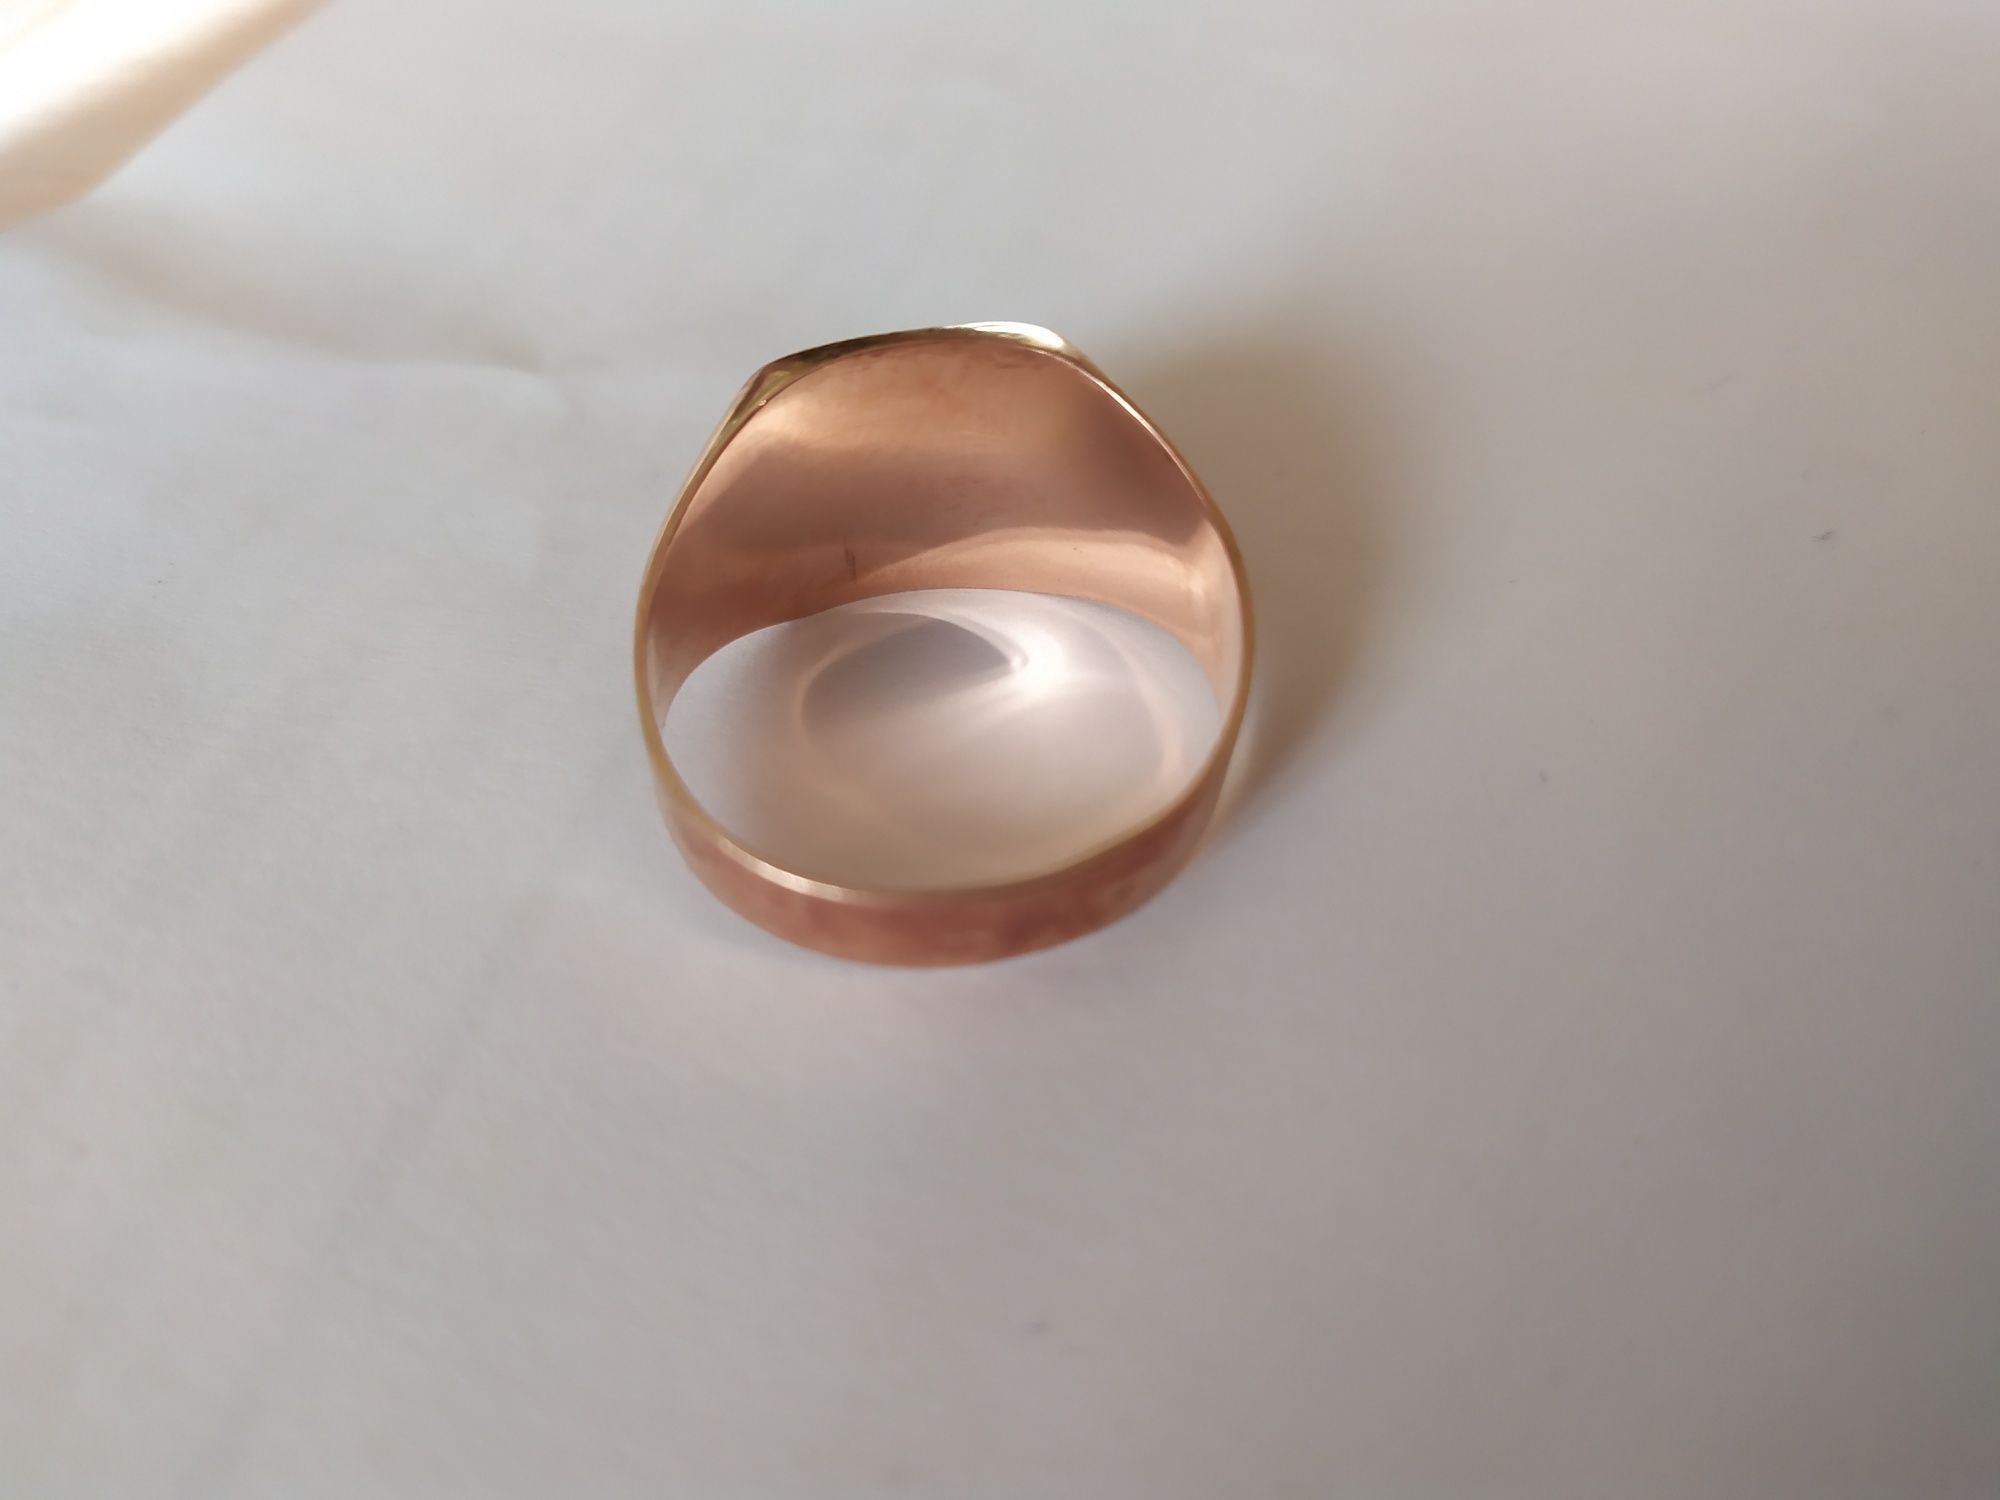 Перстень золотой мужской размер 22 проба 585 вес 6 грамм.